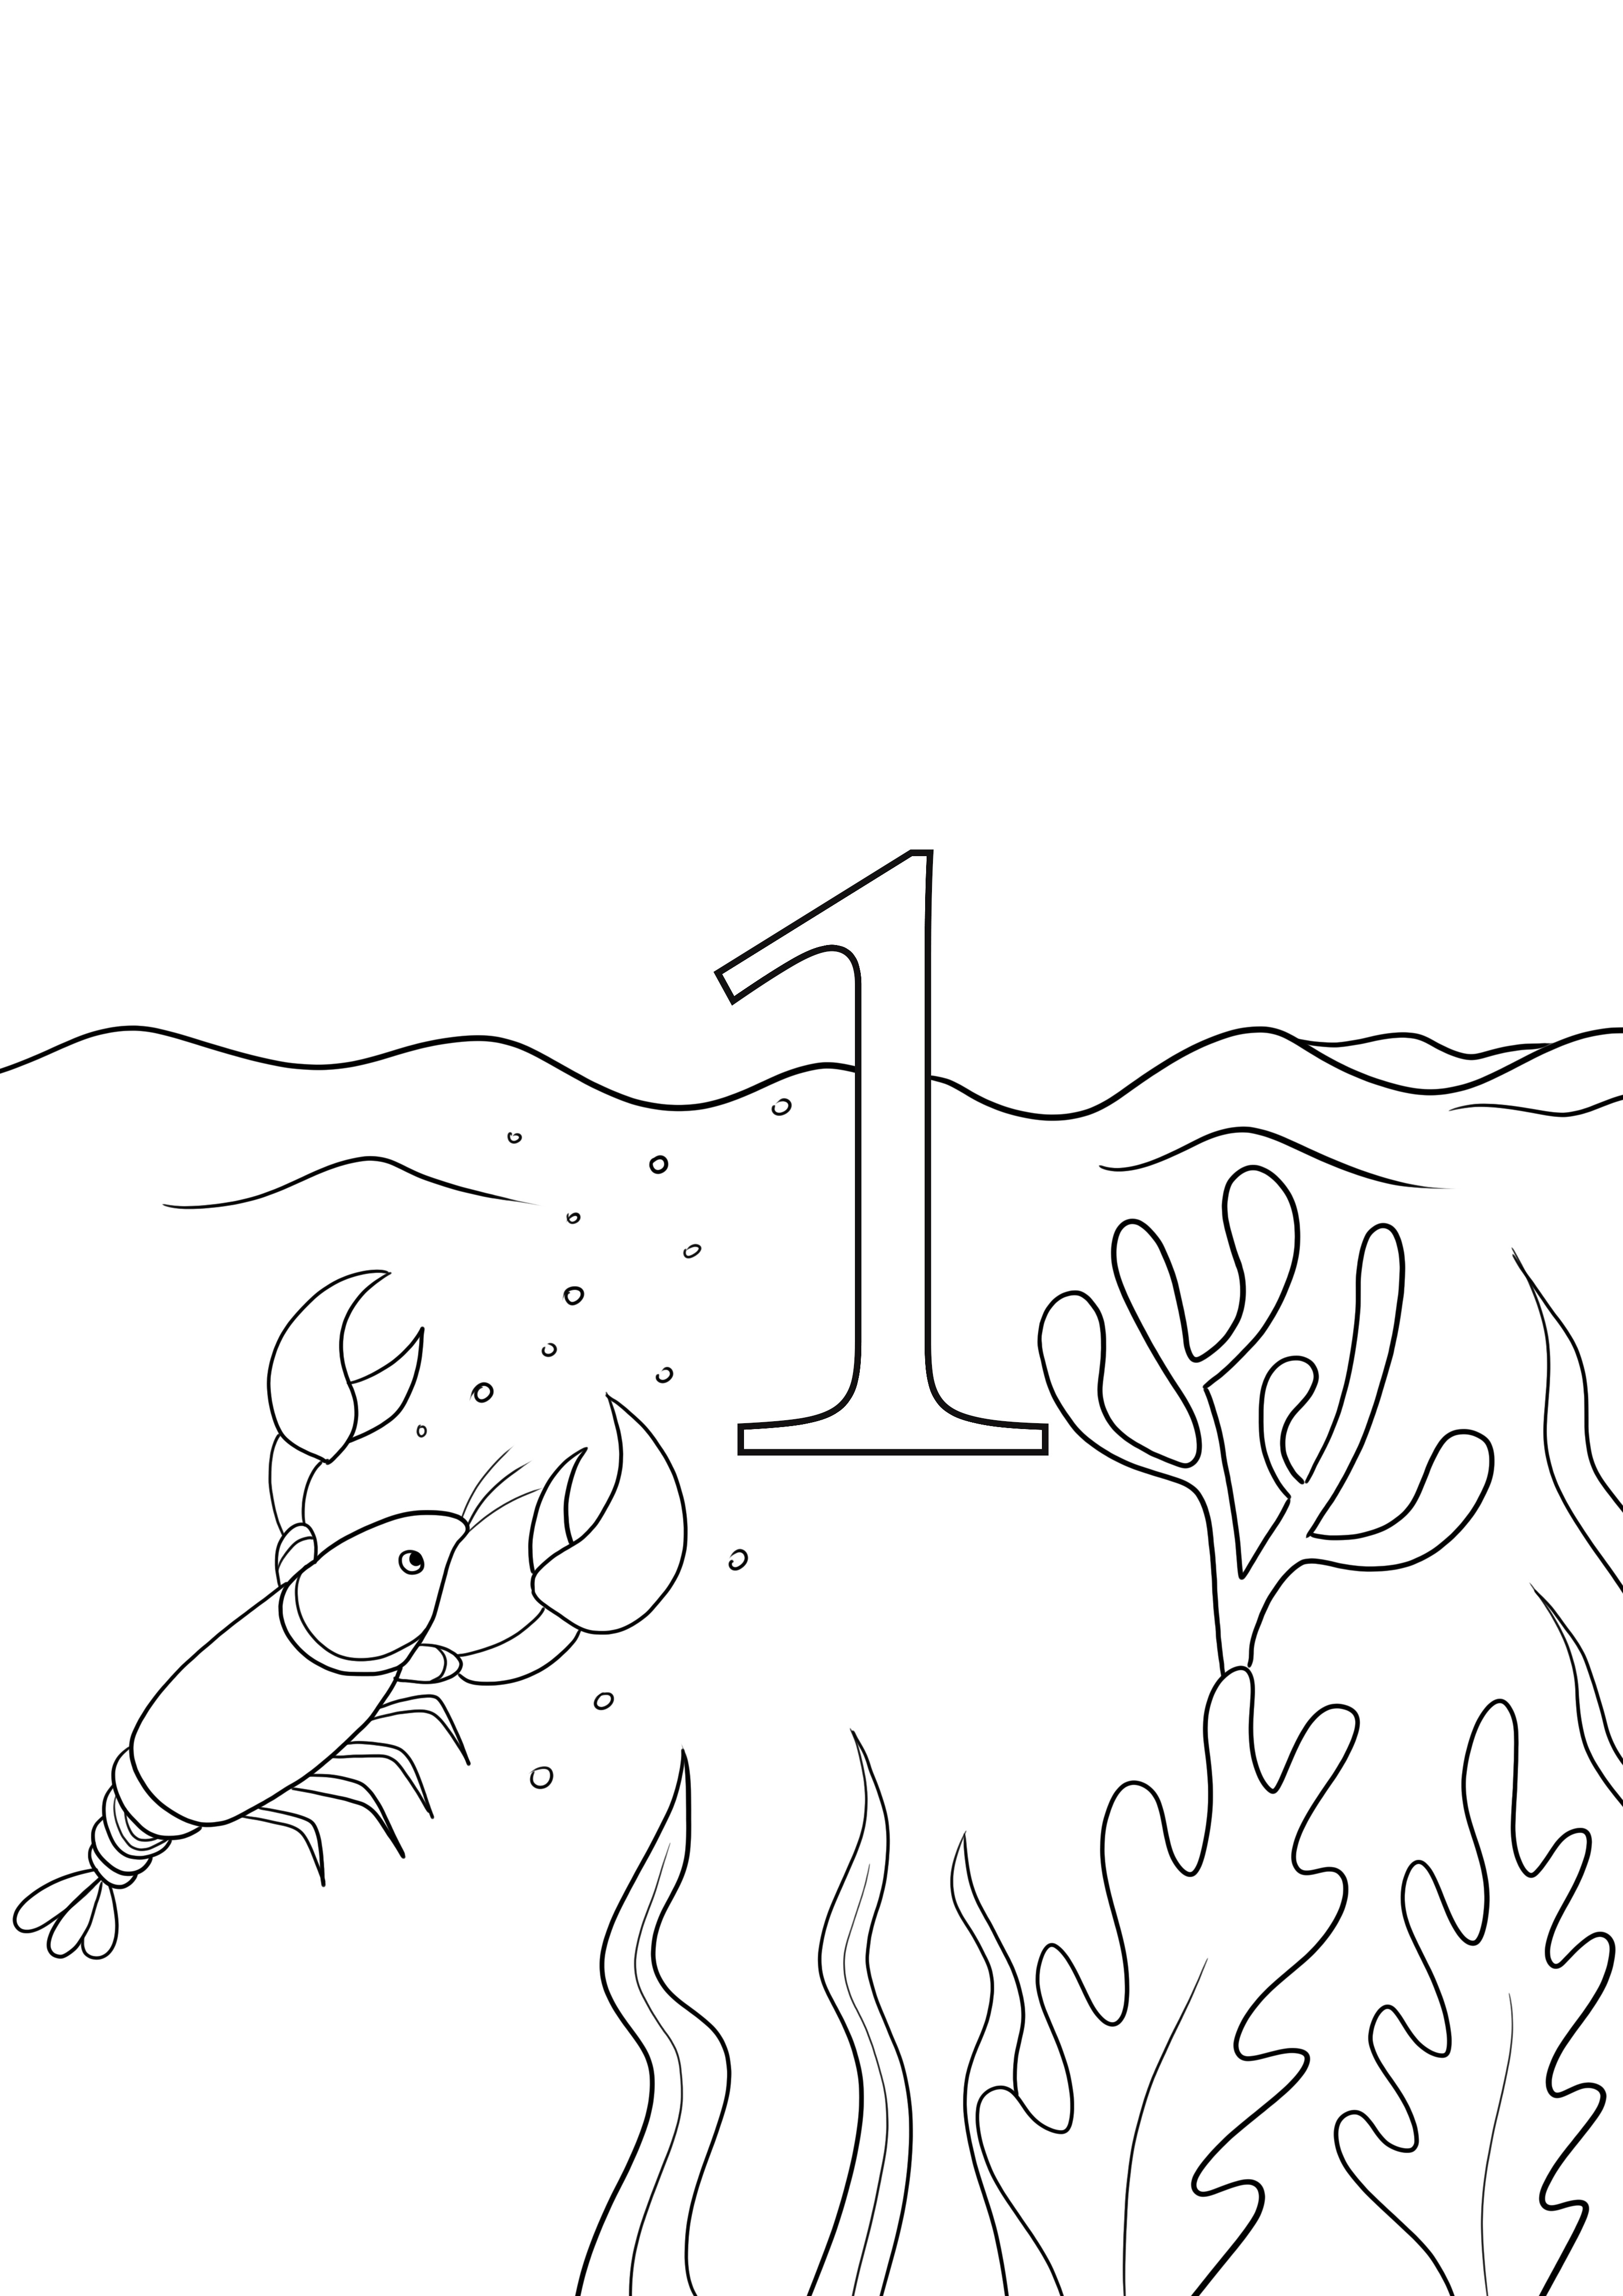 Numer 1 – jeden obraz do druku bez krabów